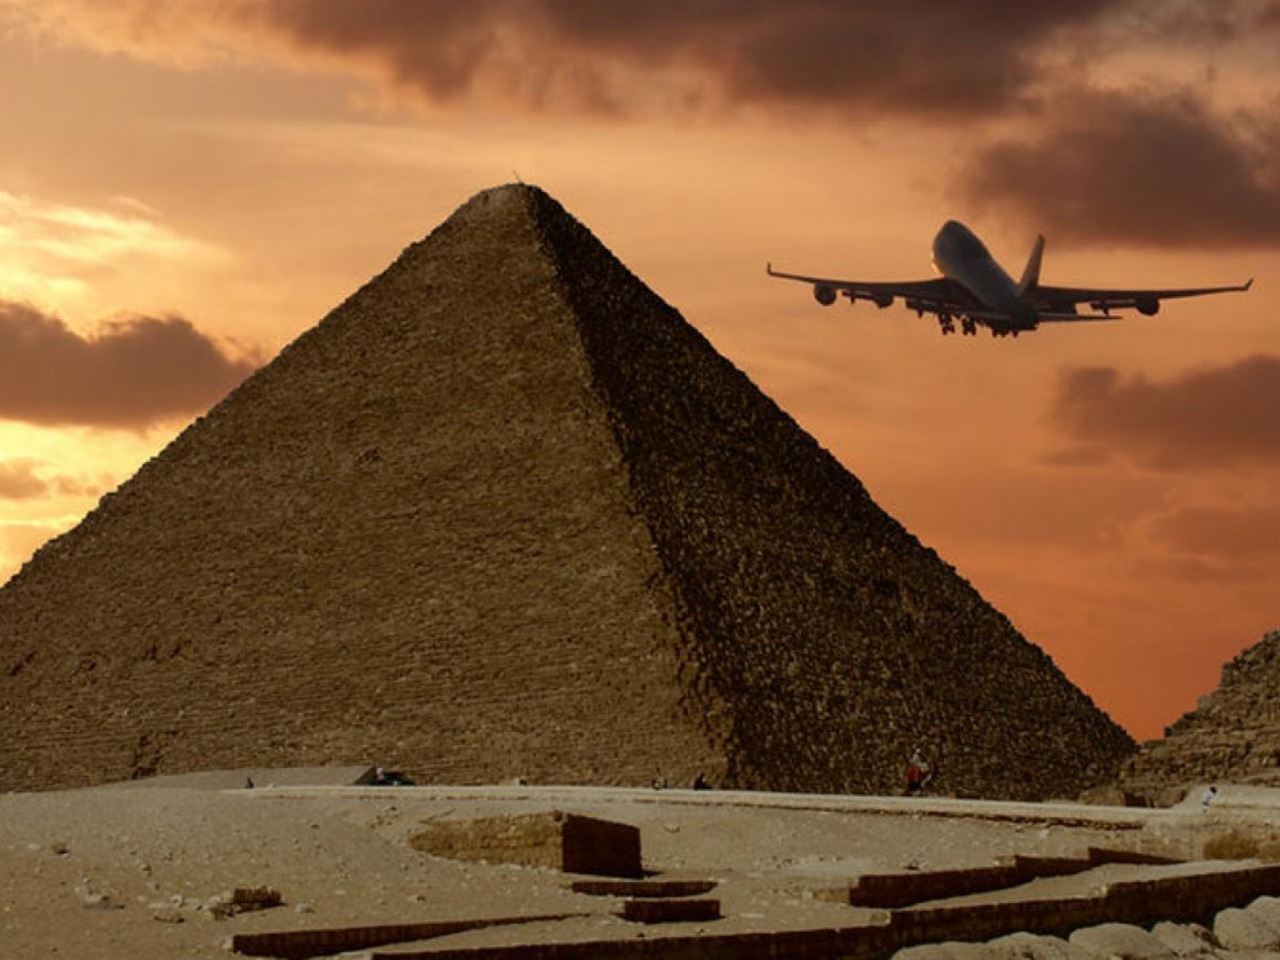 К пирамидам на самолёте: летим в столичный Каир! | Цена 288€, отзывы, описание экскурсии